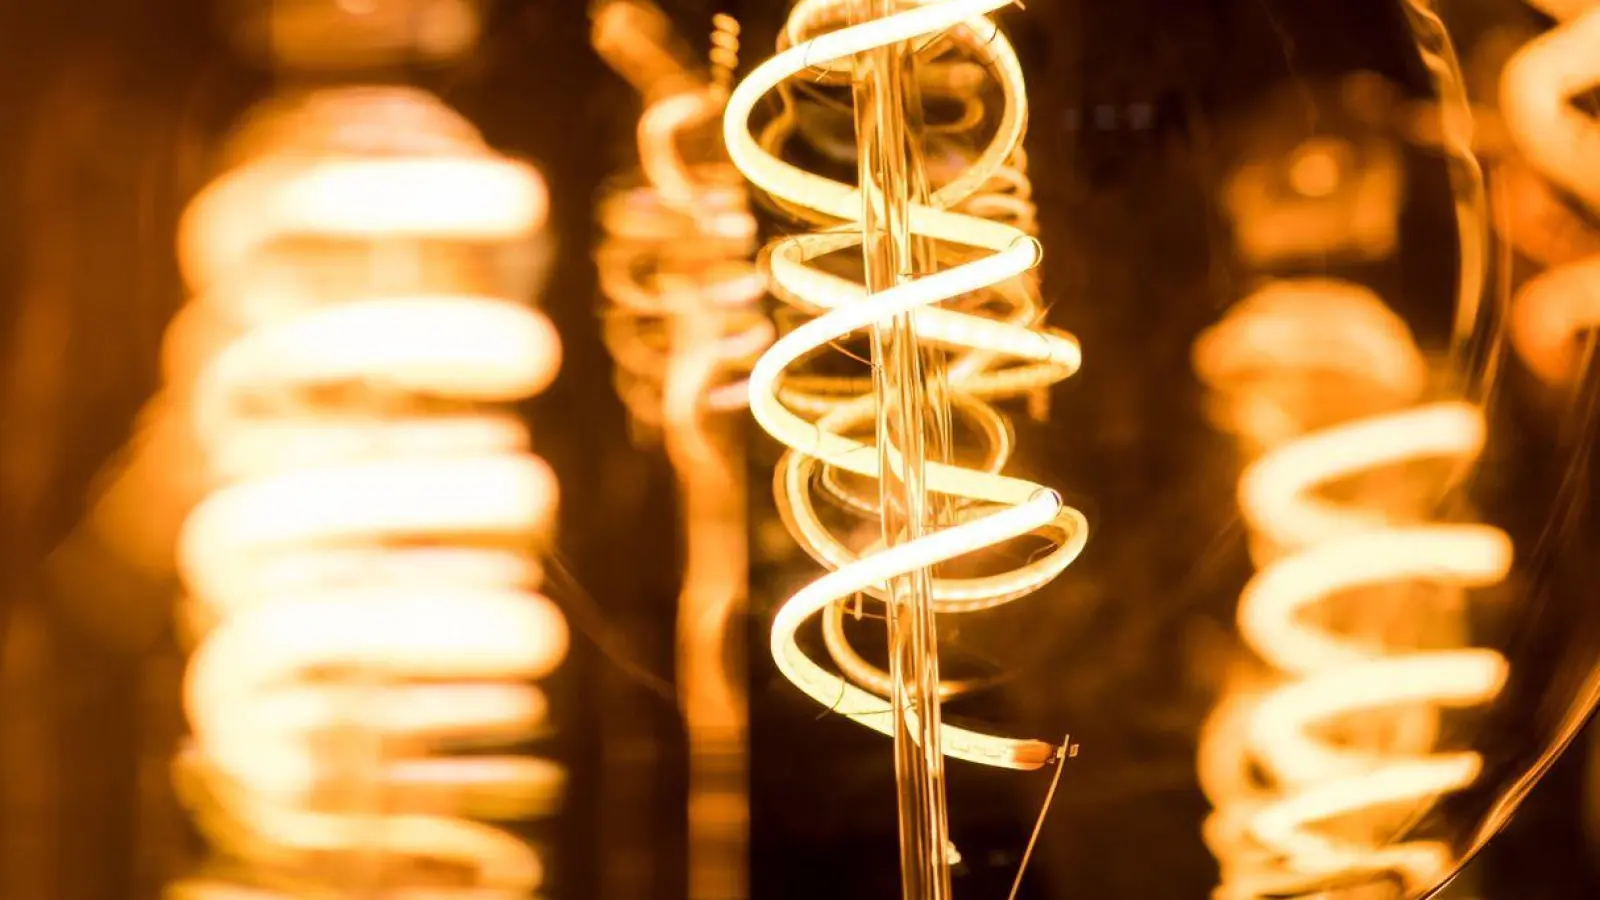 Rebound-Effekt: Zehn stromsparende LED statt einer alten Glühbirnen brennen lassen, senkt eben auch nicht die Stromkosten. (Foto: Franziska Gabbert/dpa-tmn/dpa)